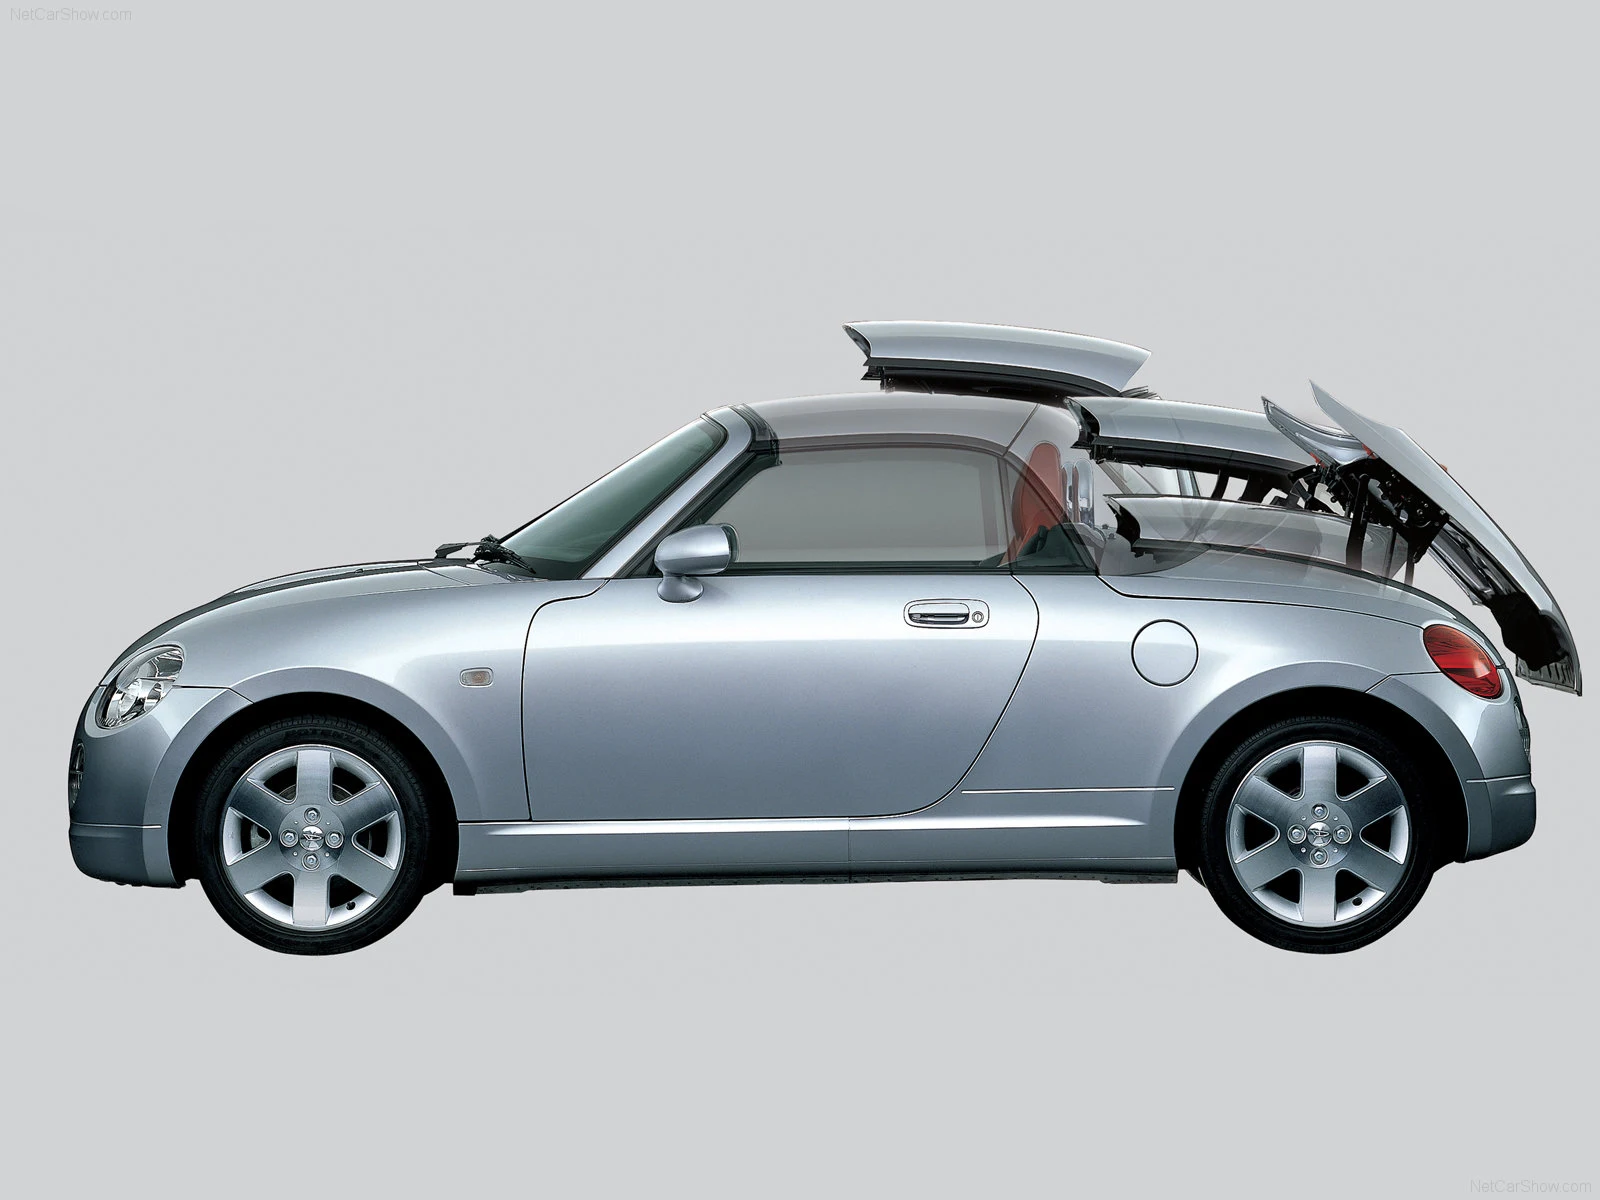 Hình ảnh xe ô tô Daihatsu Copen 2007 & nội ngoại thất